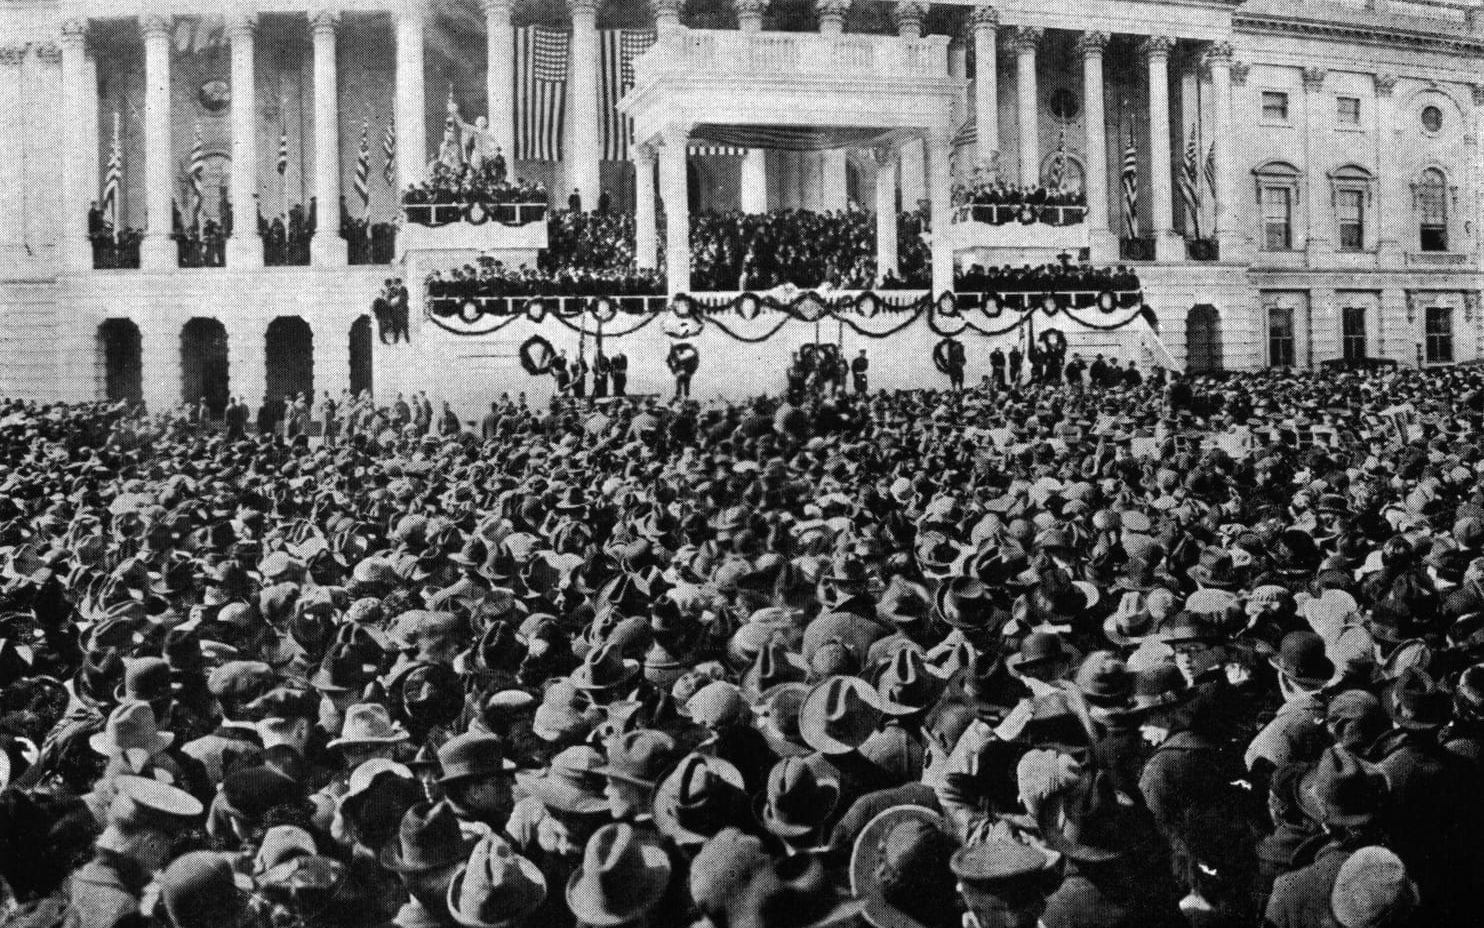 <strong>FÅ HÖRDE.</strong> Fram till 1921 var det nog få personer som en uppfattade vad den nyvalde presidenten sade. Högtalare började användas först 1921 och det dröjde till 1925 innan Calvin Coolidge som förste president levererade sitt tal i radio.